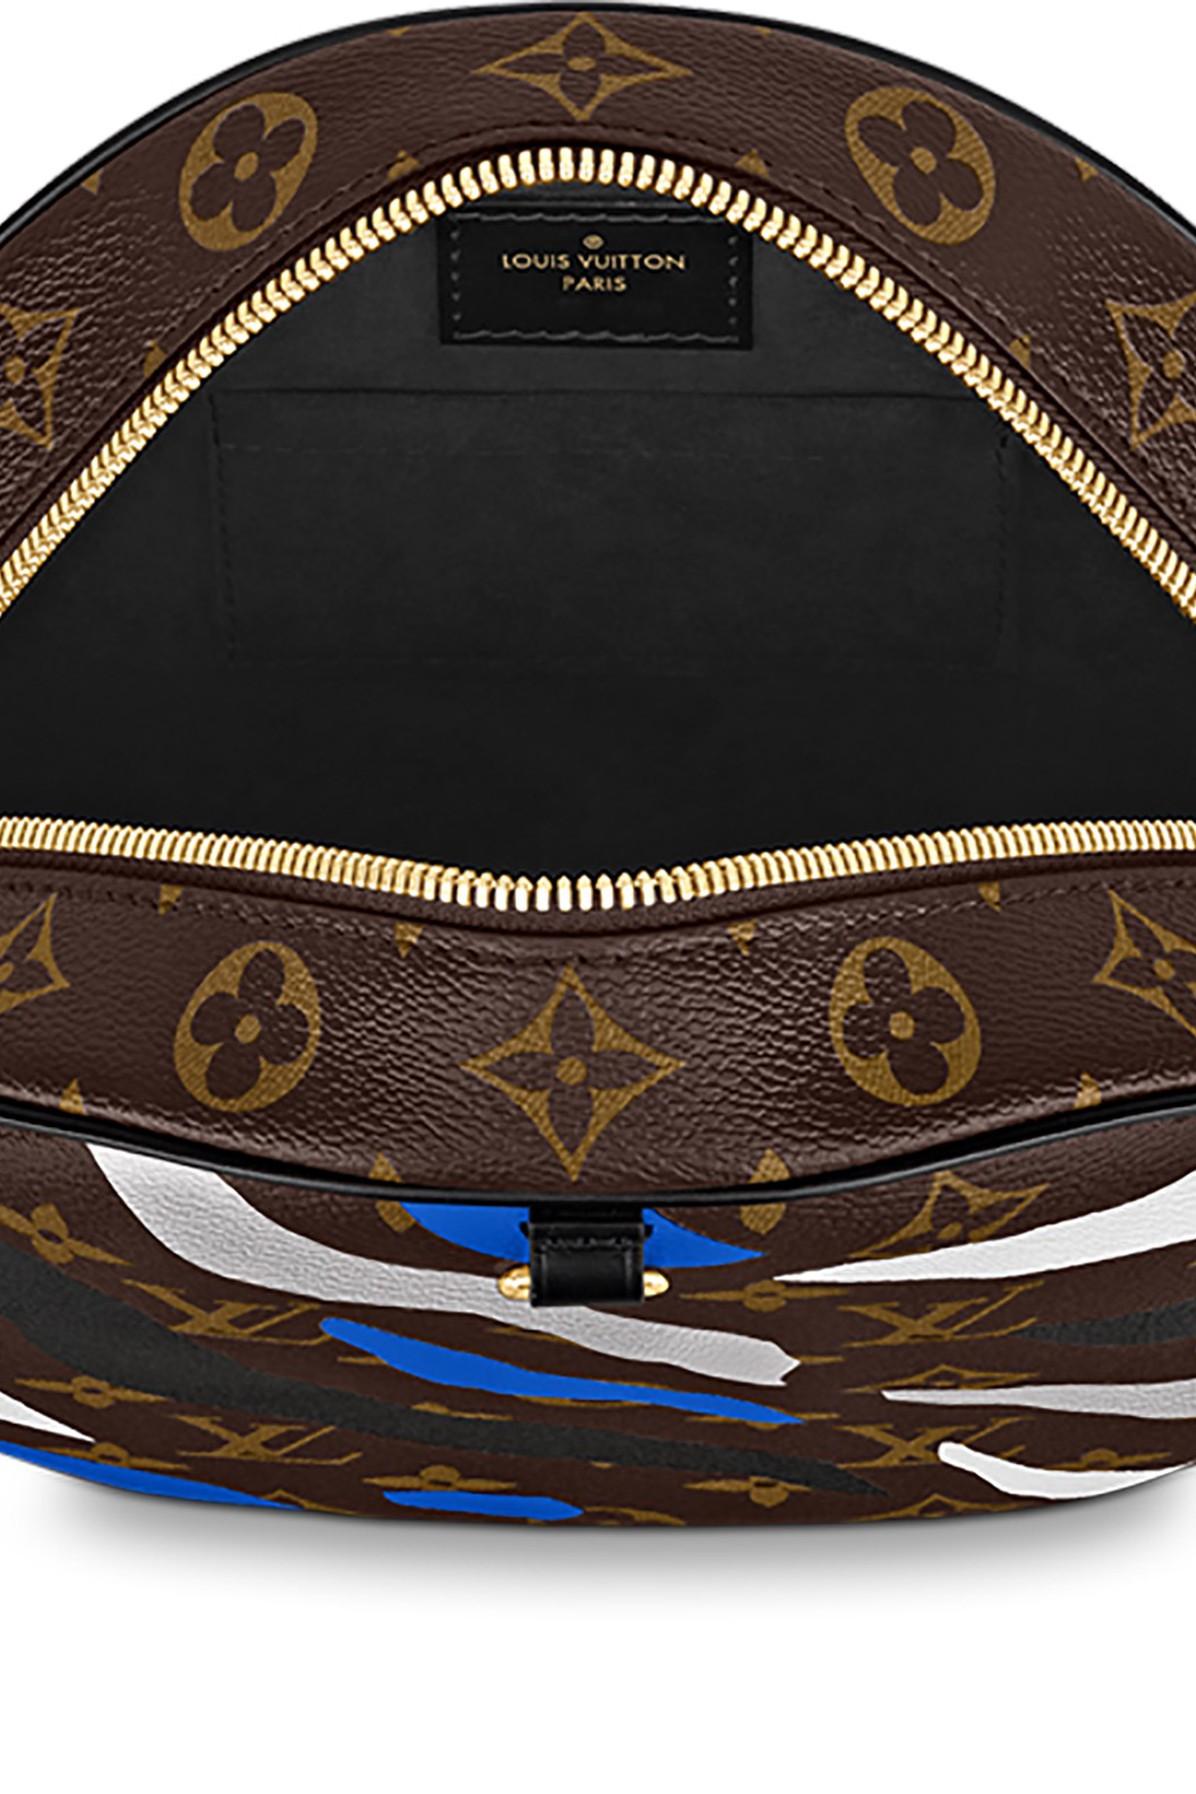 🔥NEW LOUIS VUITTON LVxLoL Boite Chapeau Souple Crossbody Bag